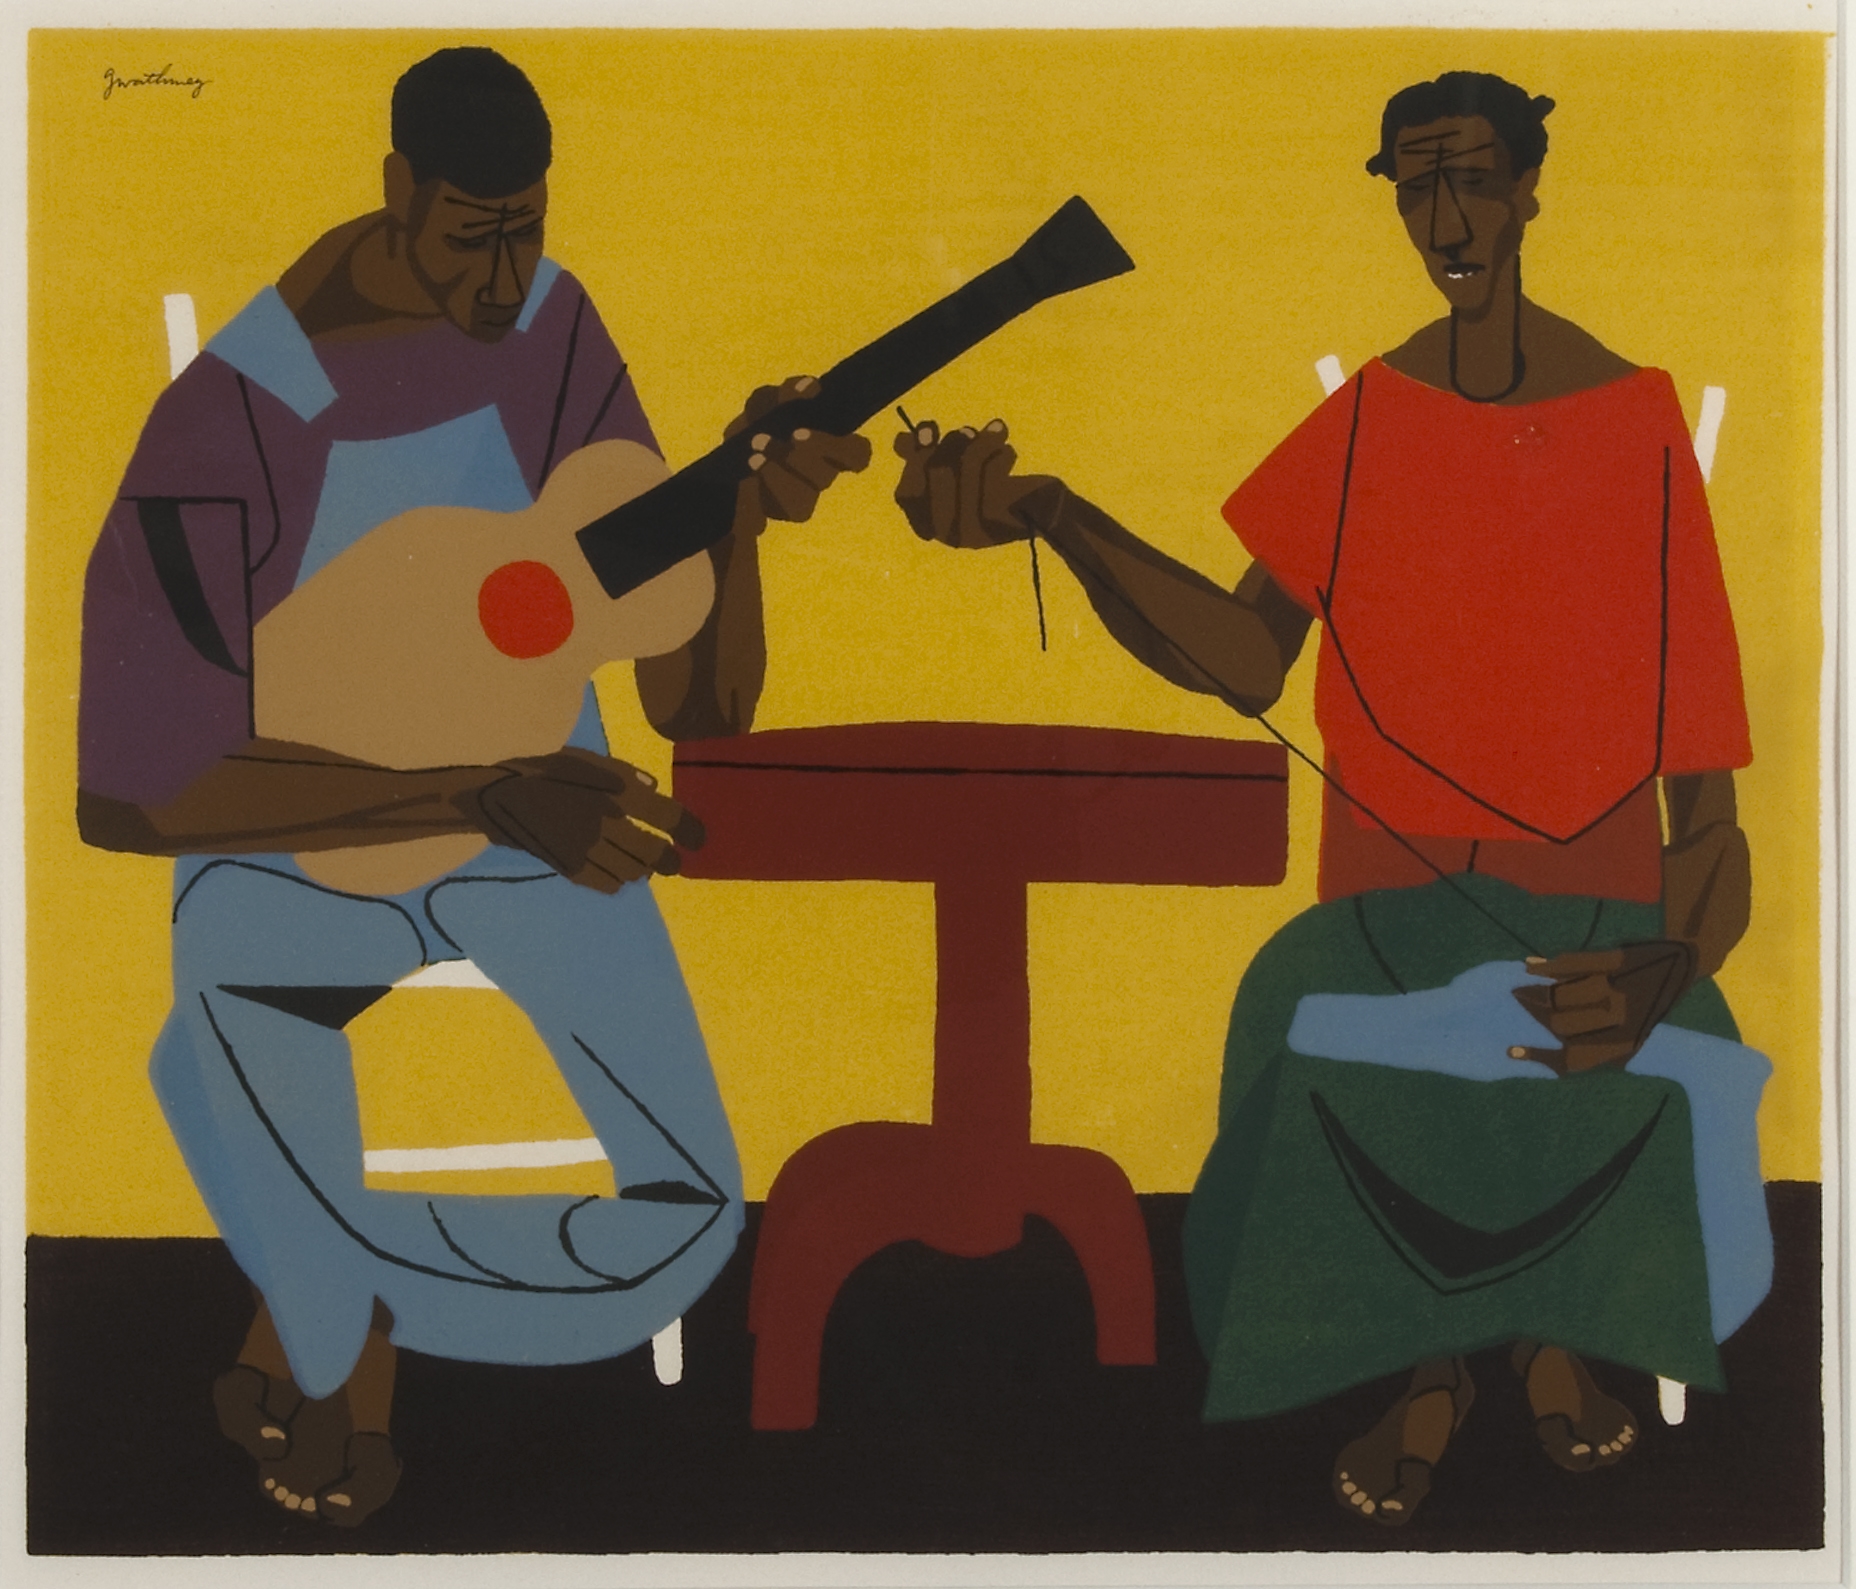 A Black man plays guitar while a Black woman sews.